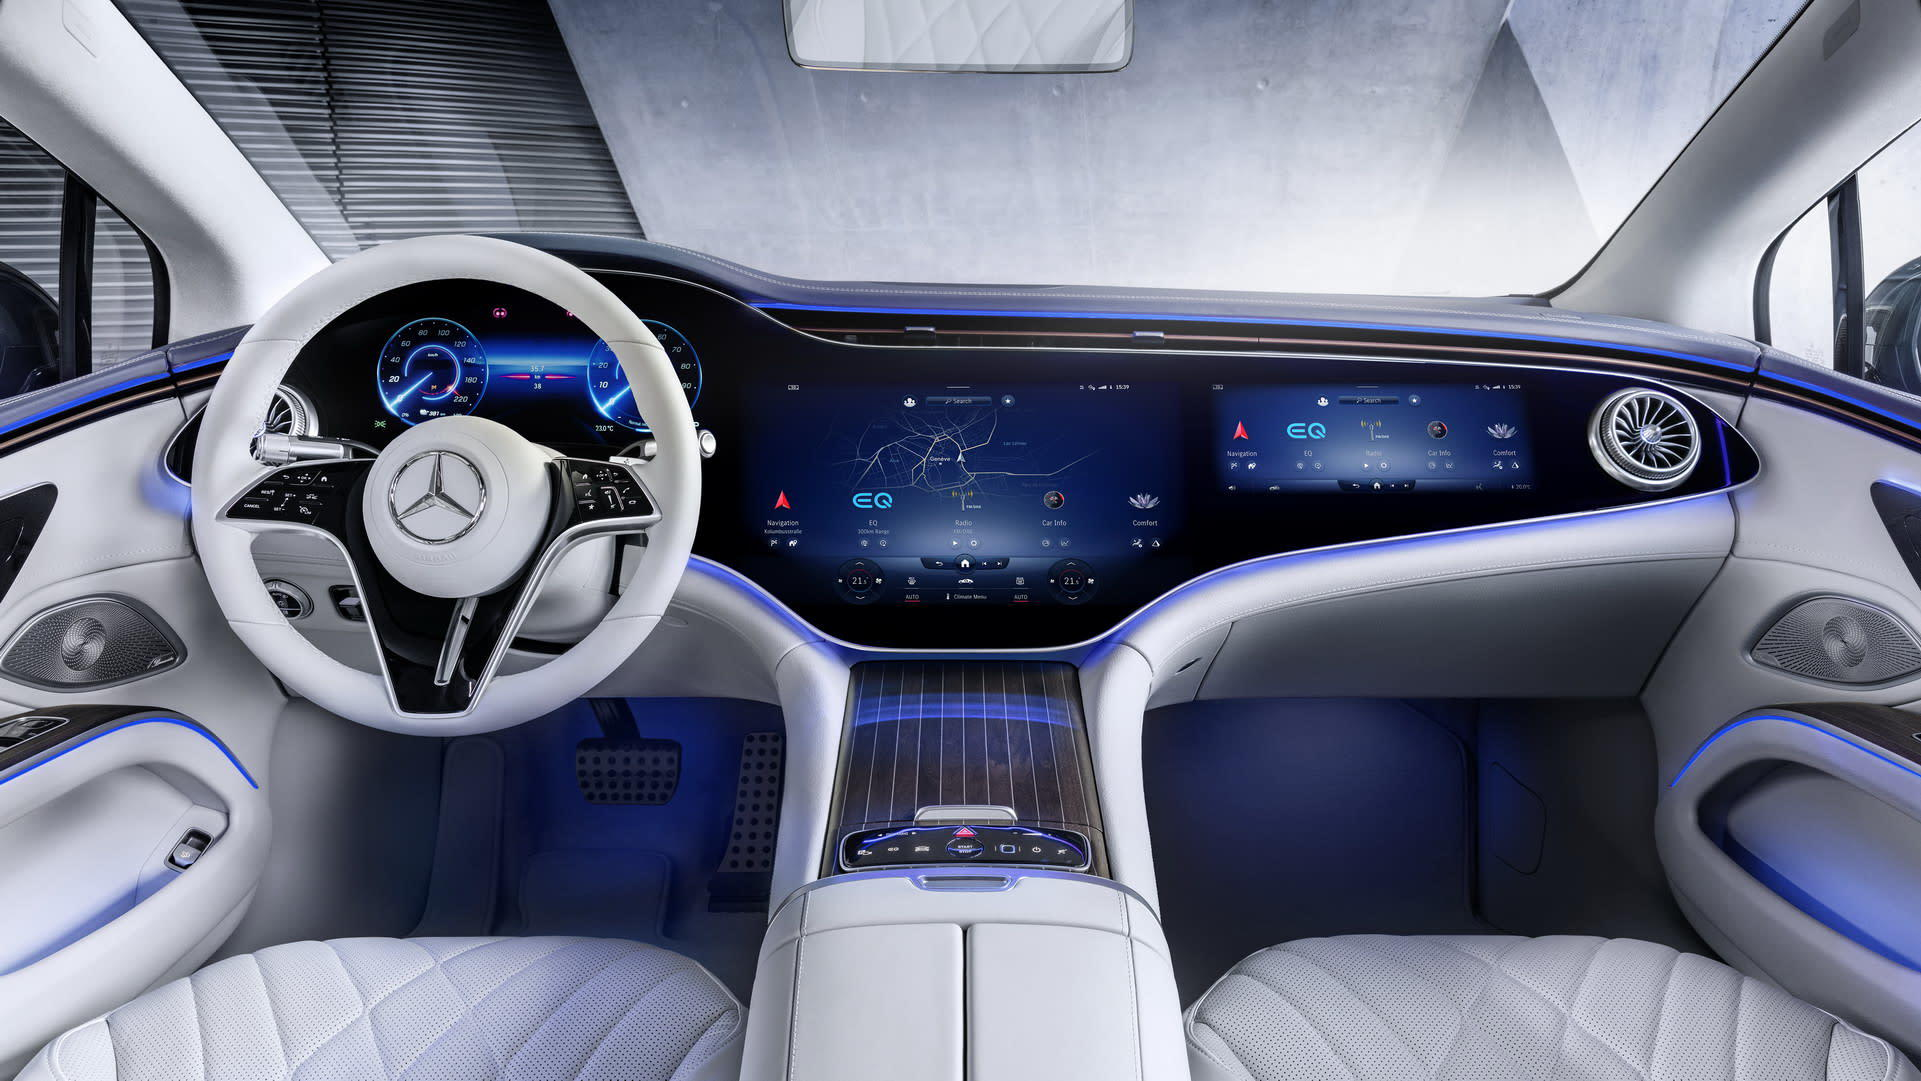 Mercedes показала интерьер нового электрокара EQS с 56″ экраном мультимедиа